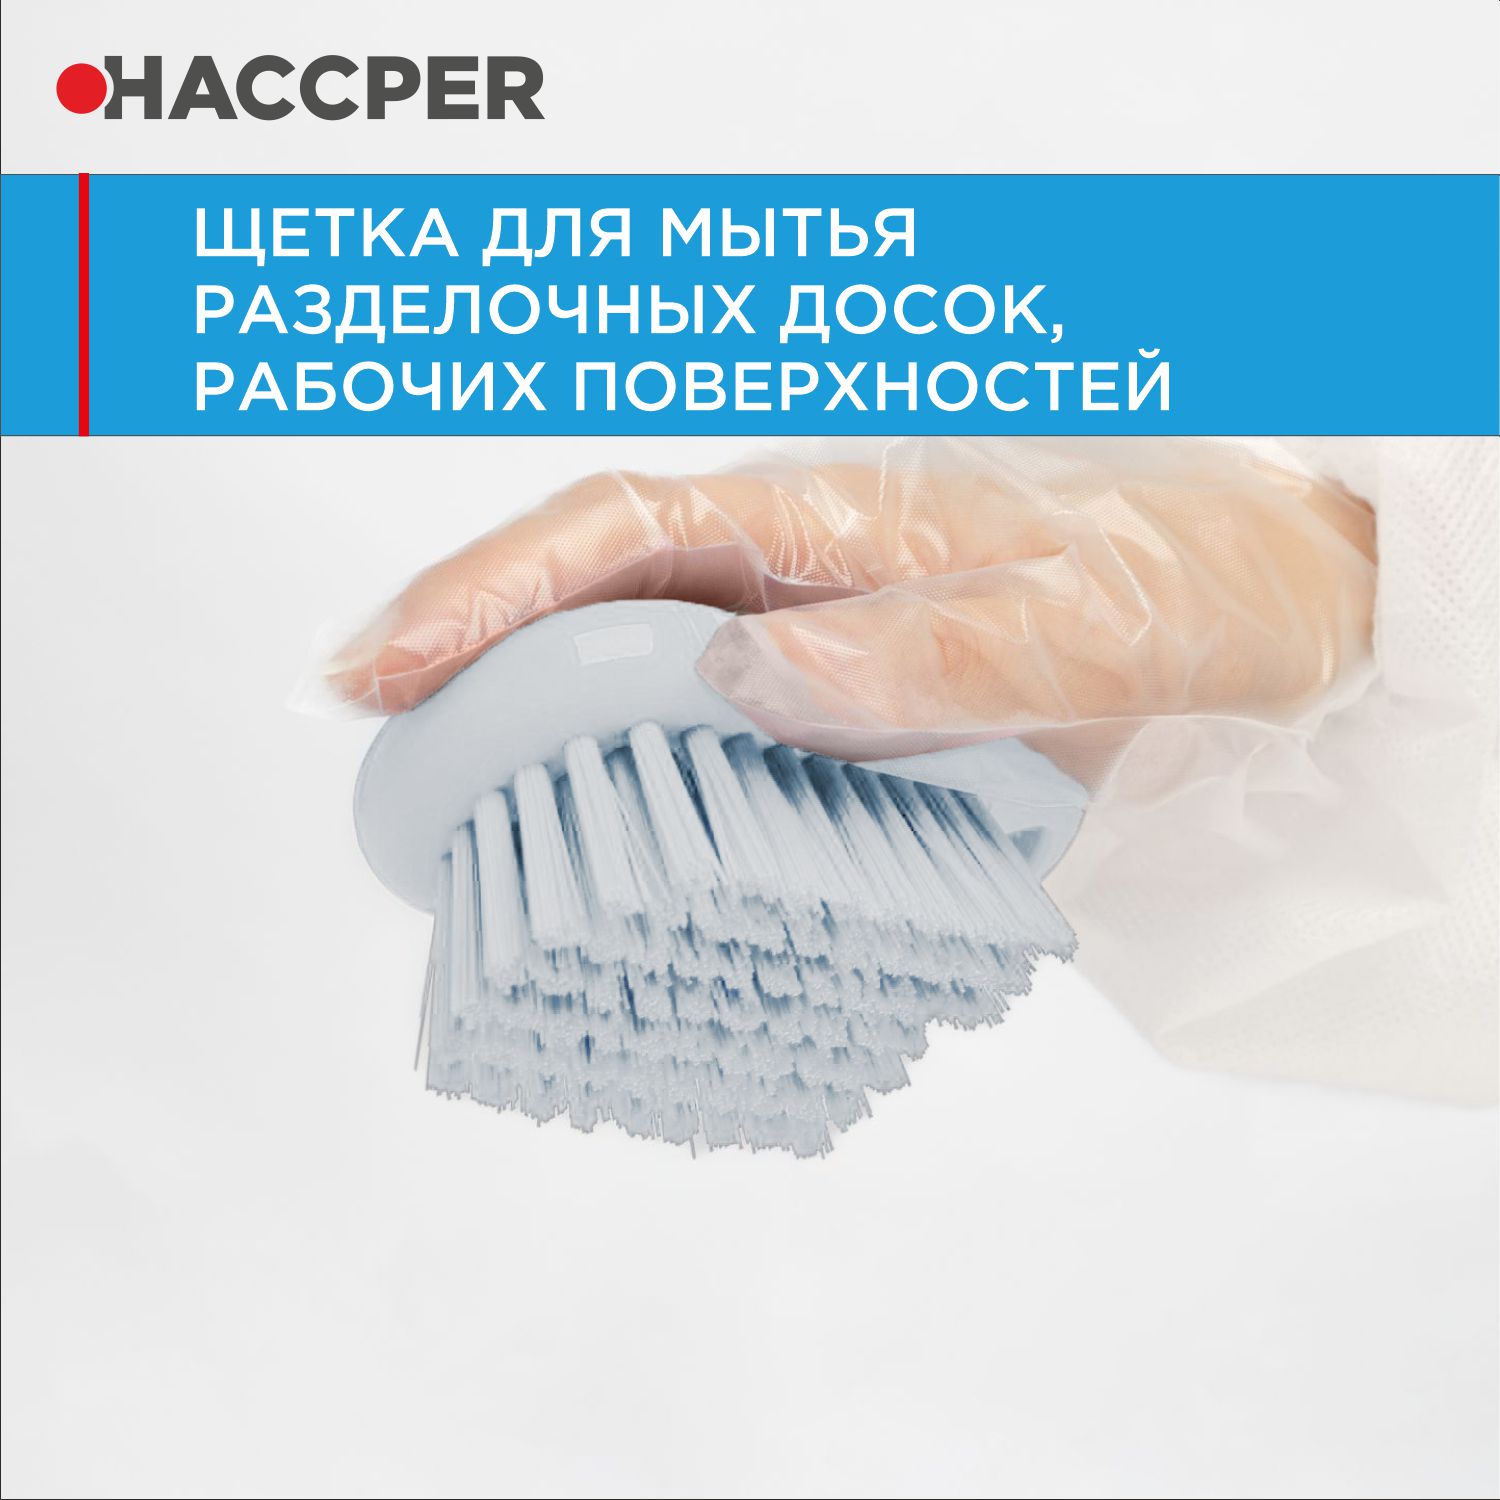 Щетка HACCPER для мытья разделочных досок, рабочих поверхностей, белый